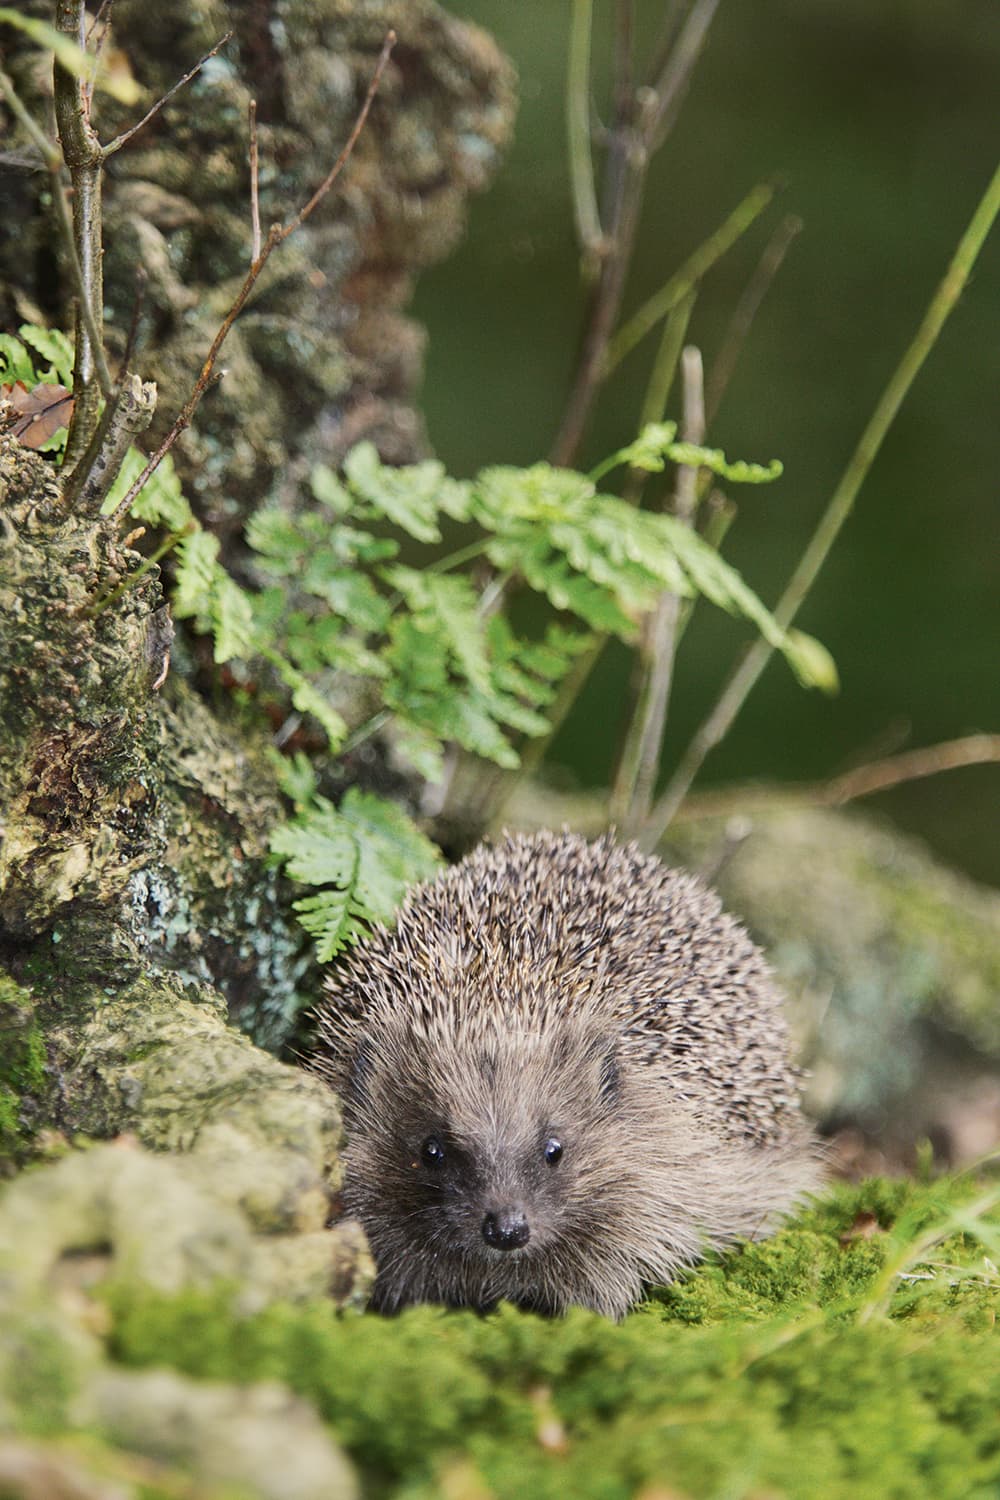 Hedgehog-in-undergrowth-Paul-Hobson